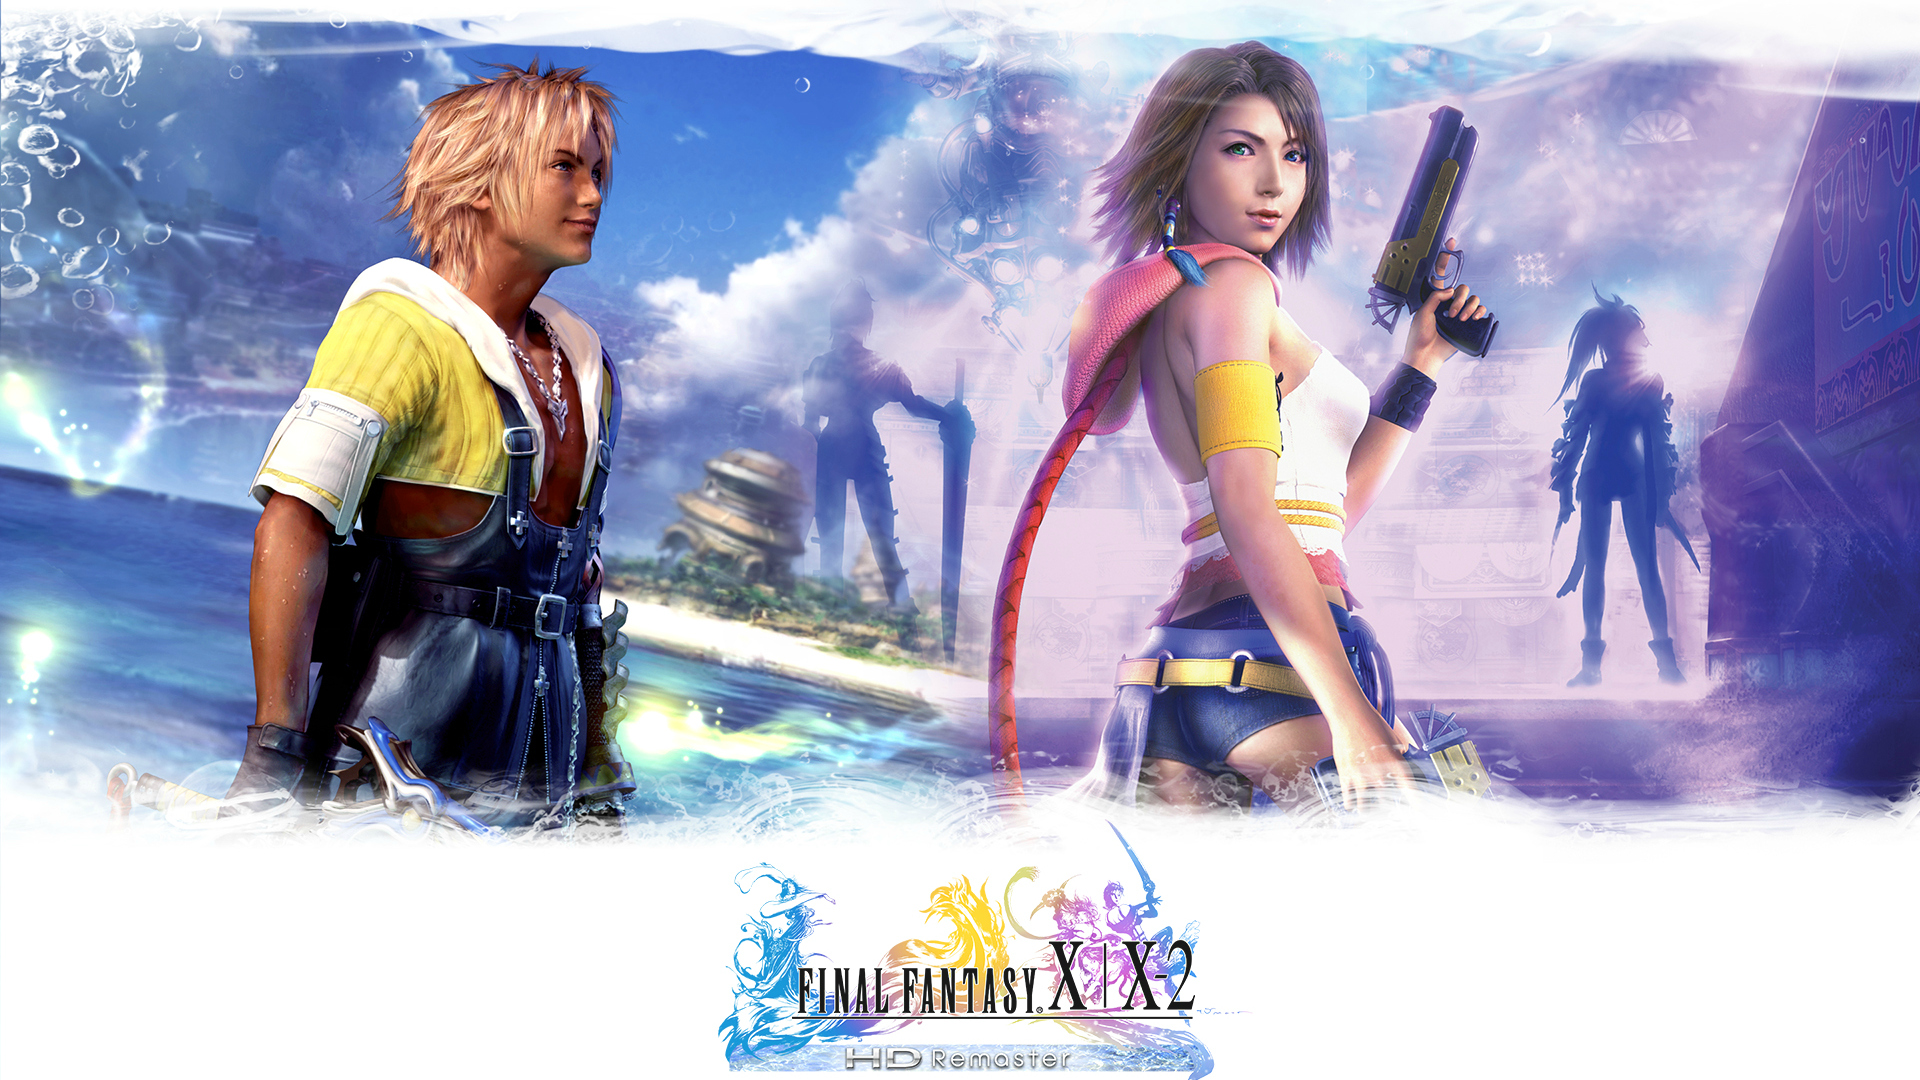 Final Fantasy X|X-2 HD arriva su Steam